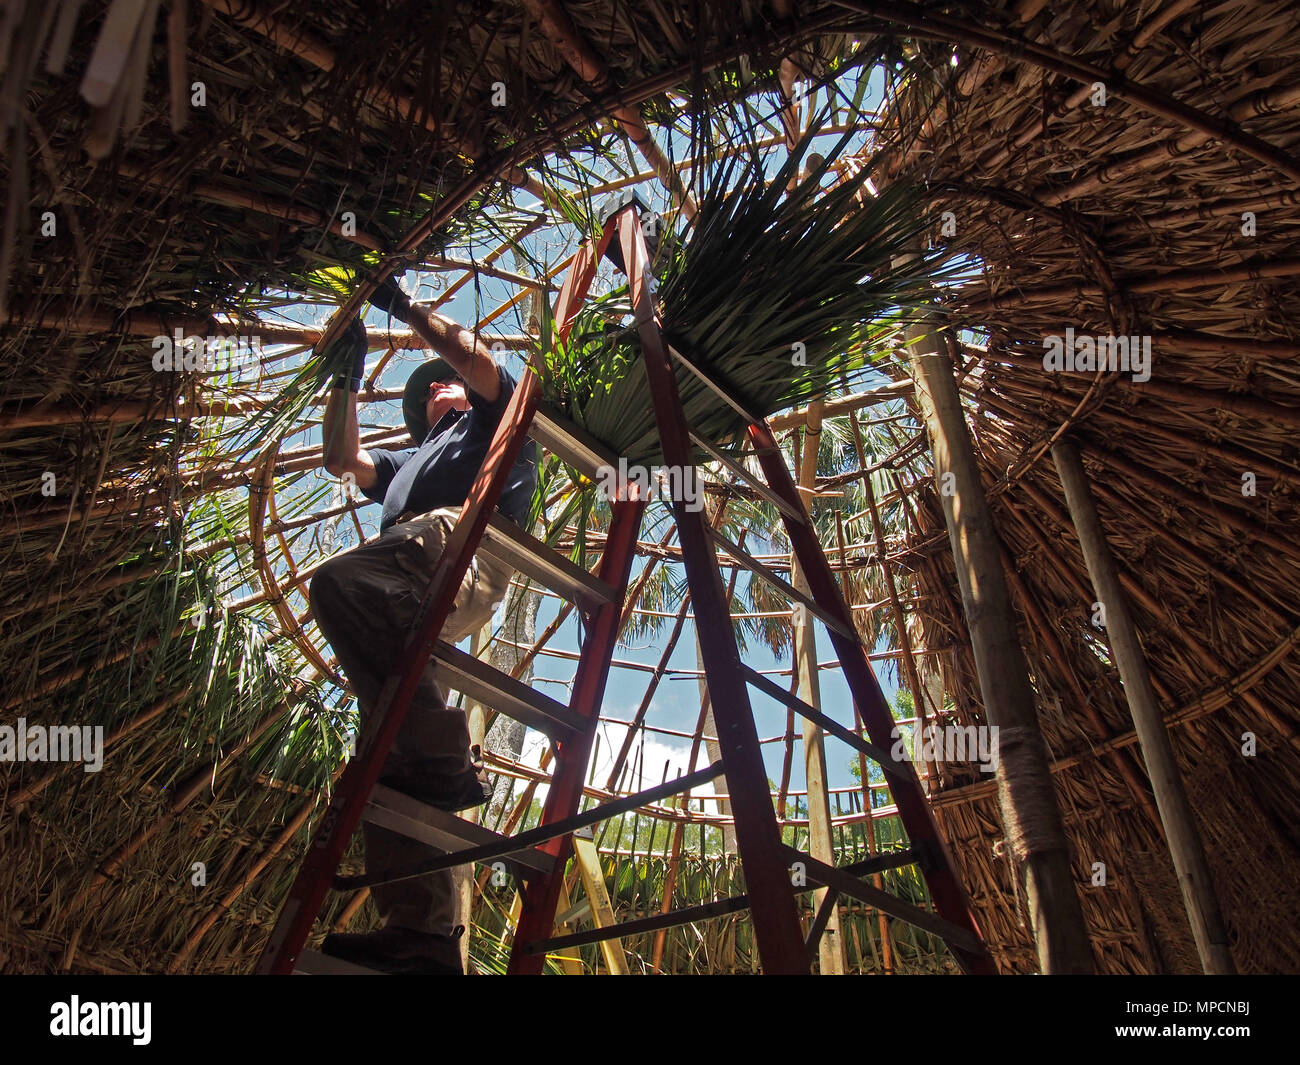 Lavoratore di stazionamento re-thatches Timucuan palm hut ricreazione alla fontana della giovinezza del Parco Archeologico di Sant Agostino, Florida, USA, 2018 © Katharine Andrioti Foto Stock